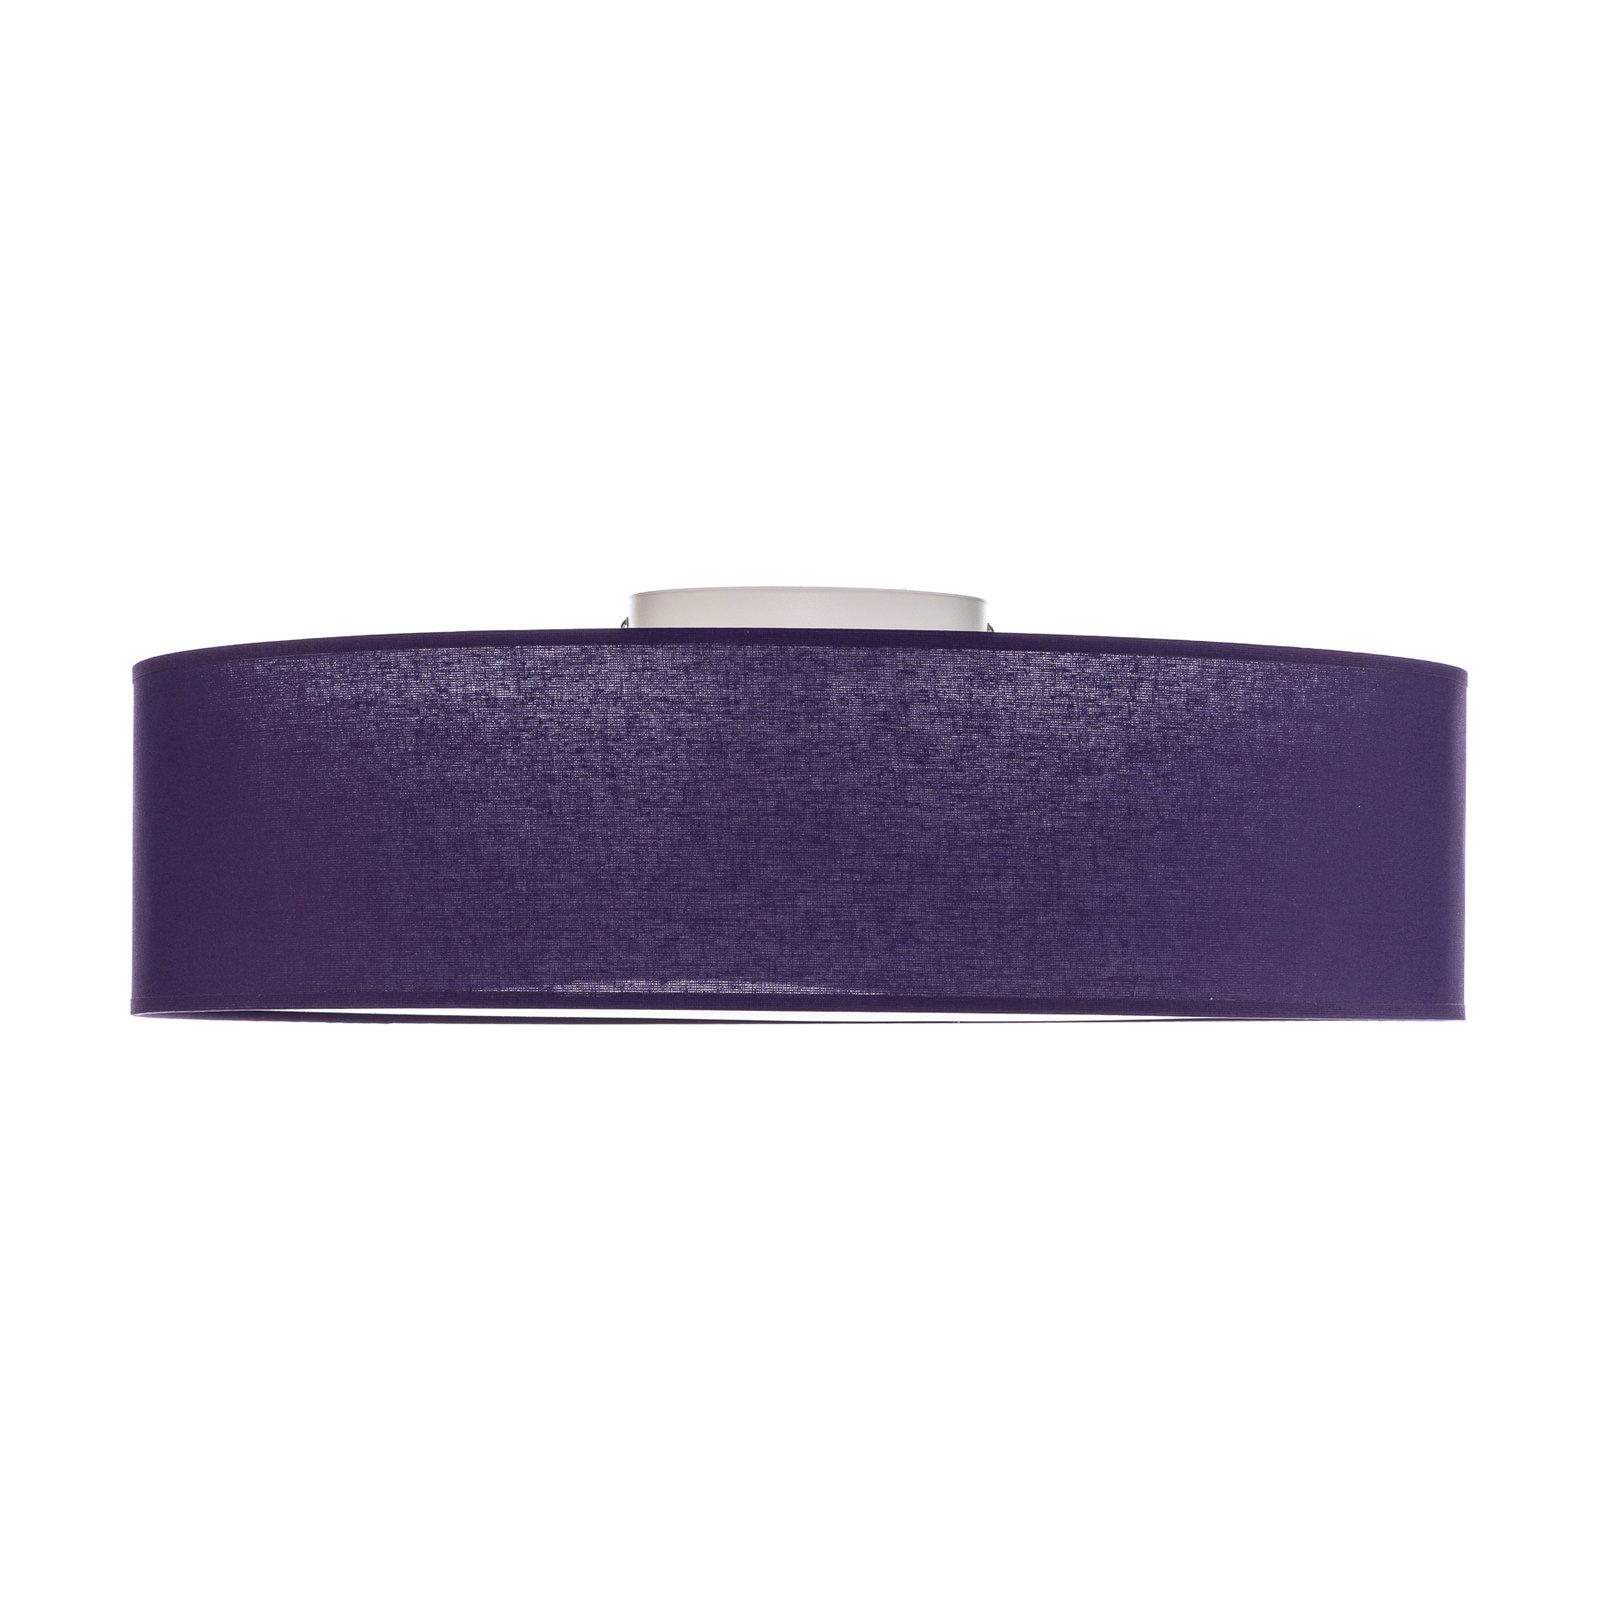 Euluna Roller couverture, abat-jour en tissu violet, Ø 50 cm